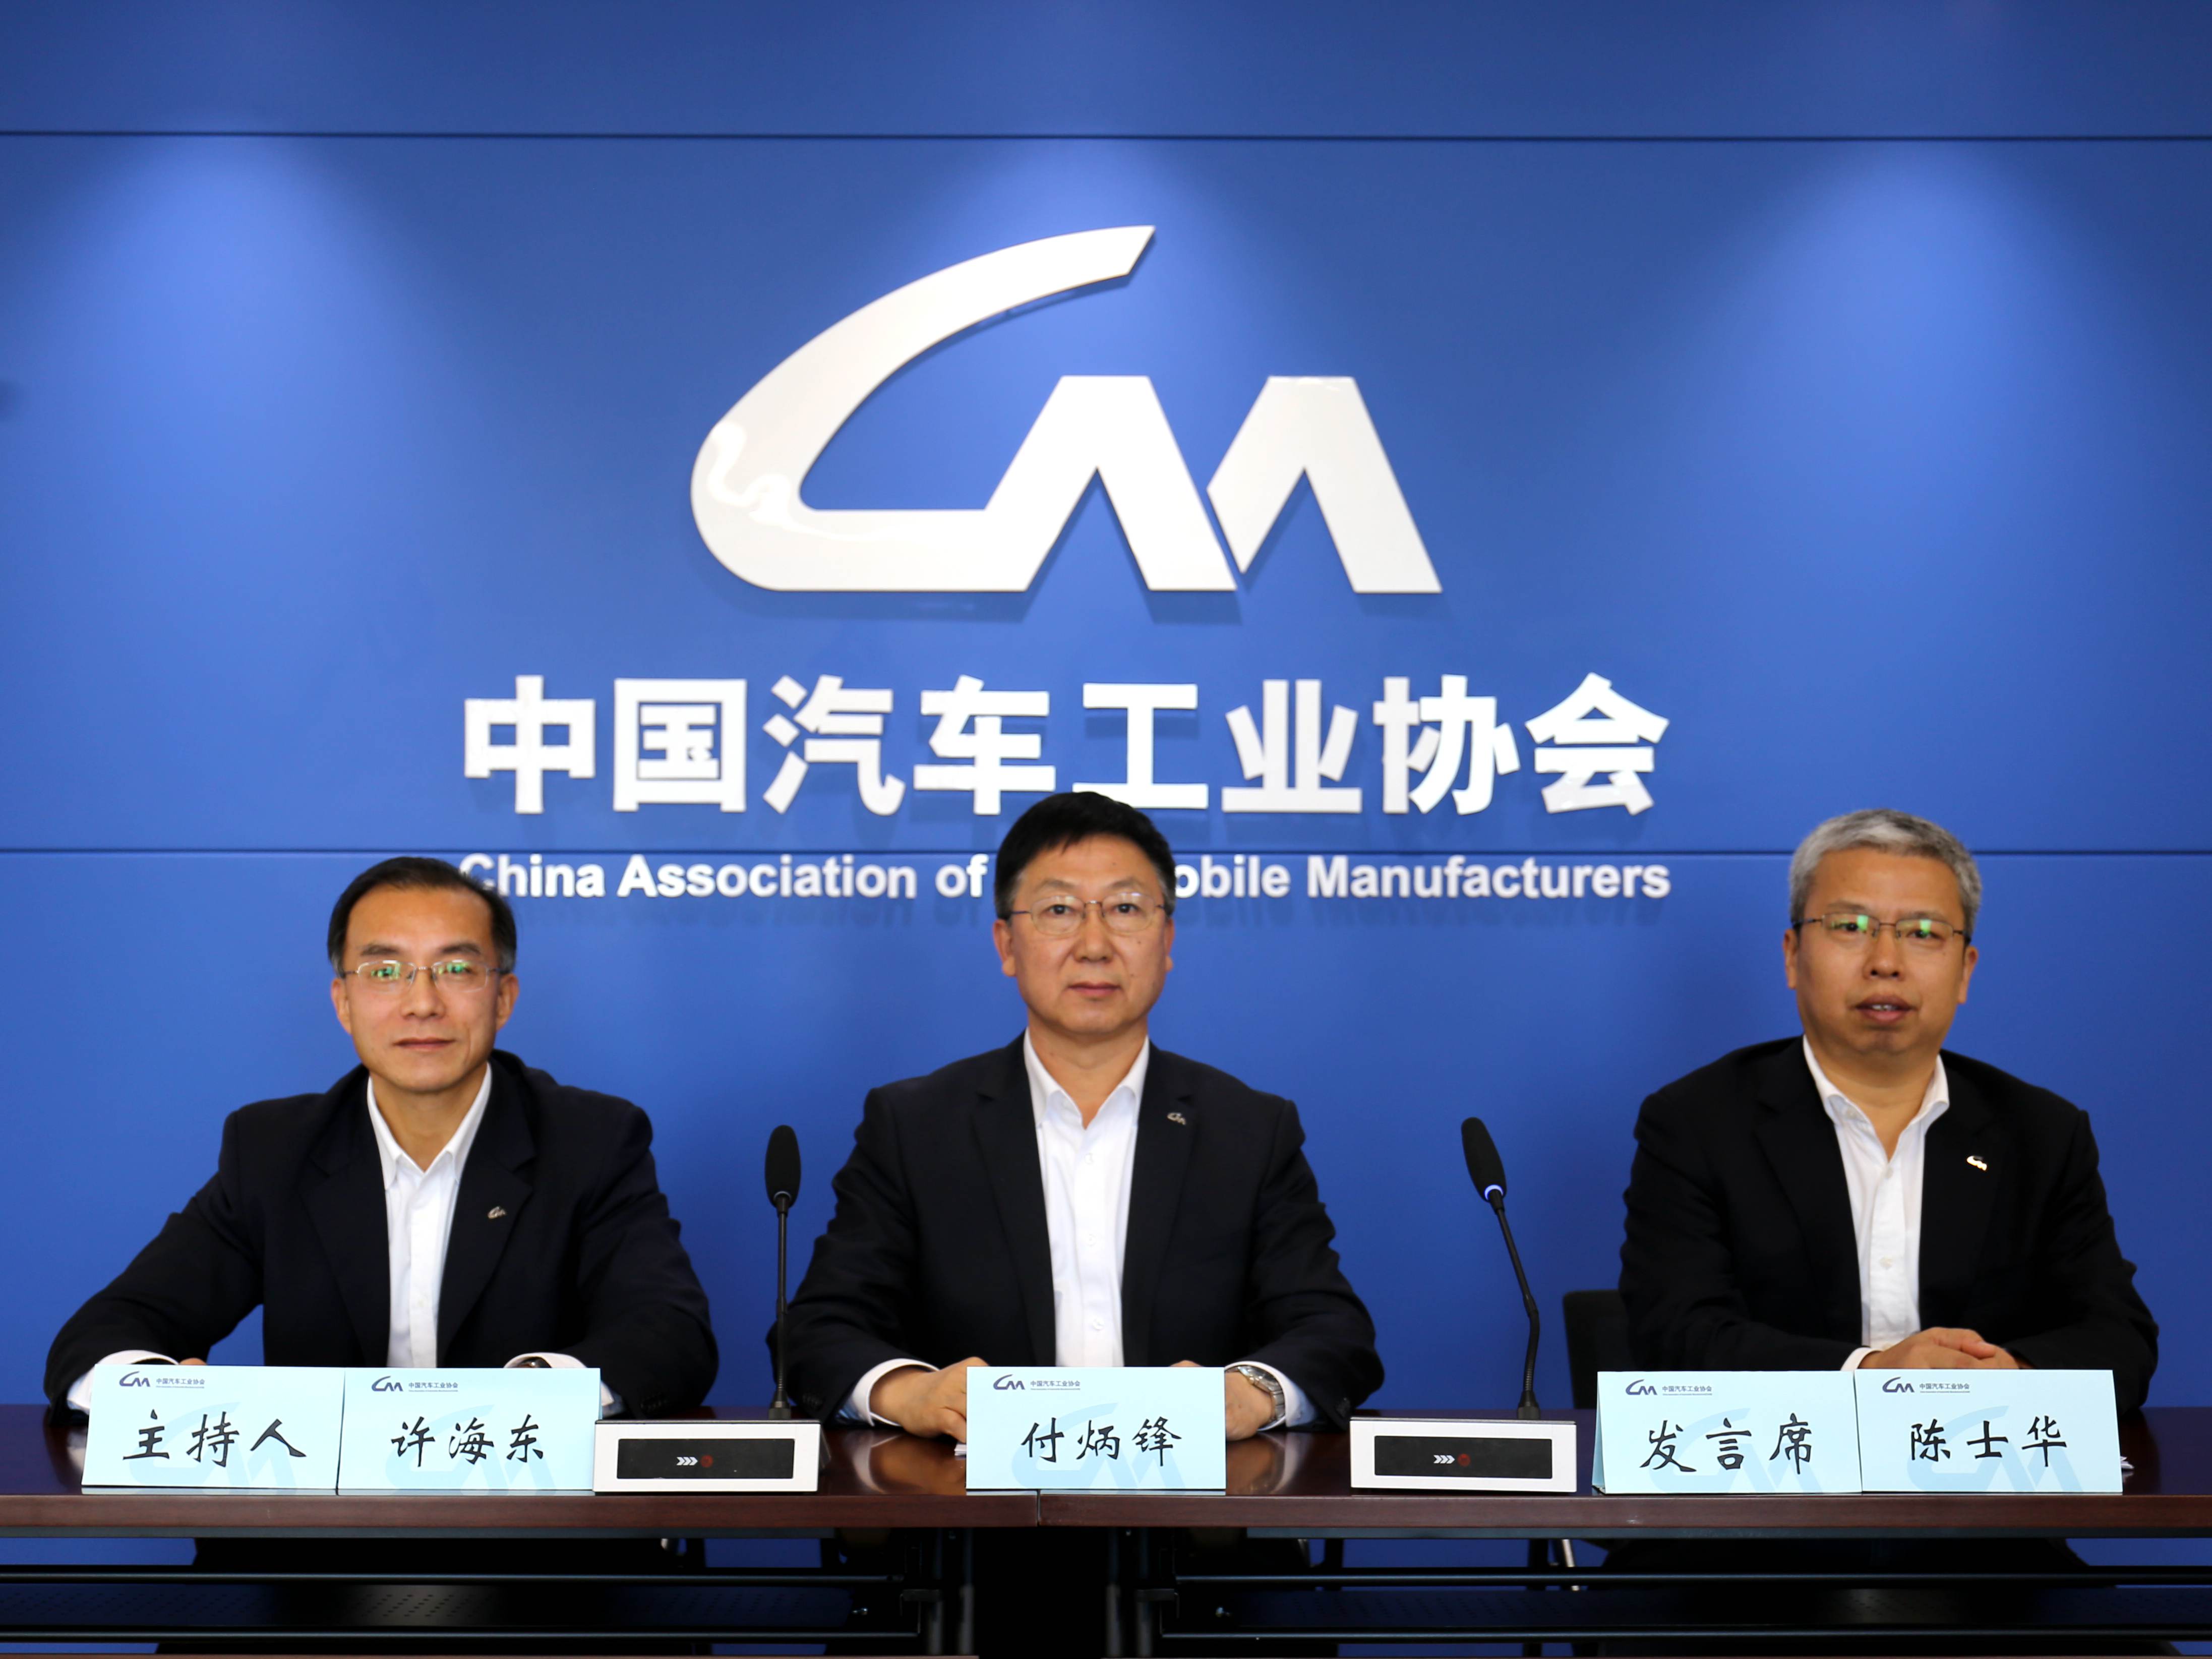 中国汽车工业协会 CAAM 1. (中国汽车工业工程有限公司)